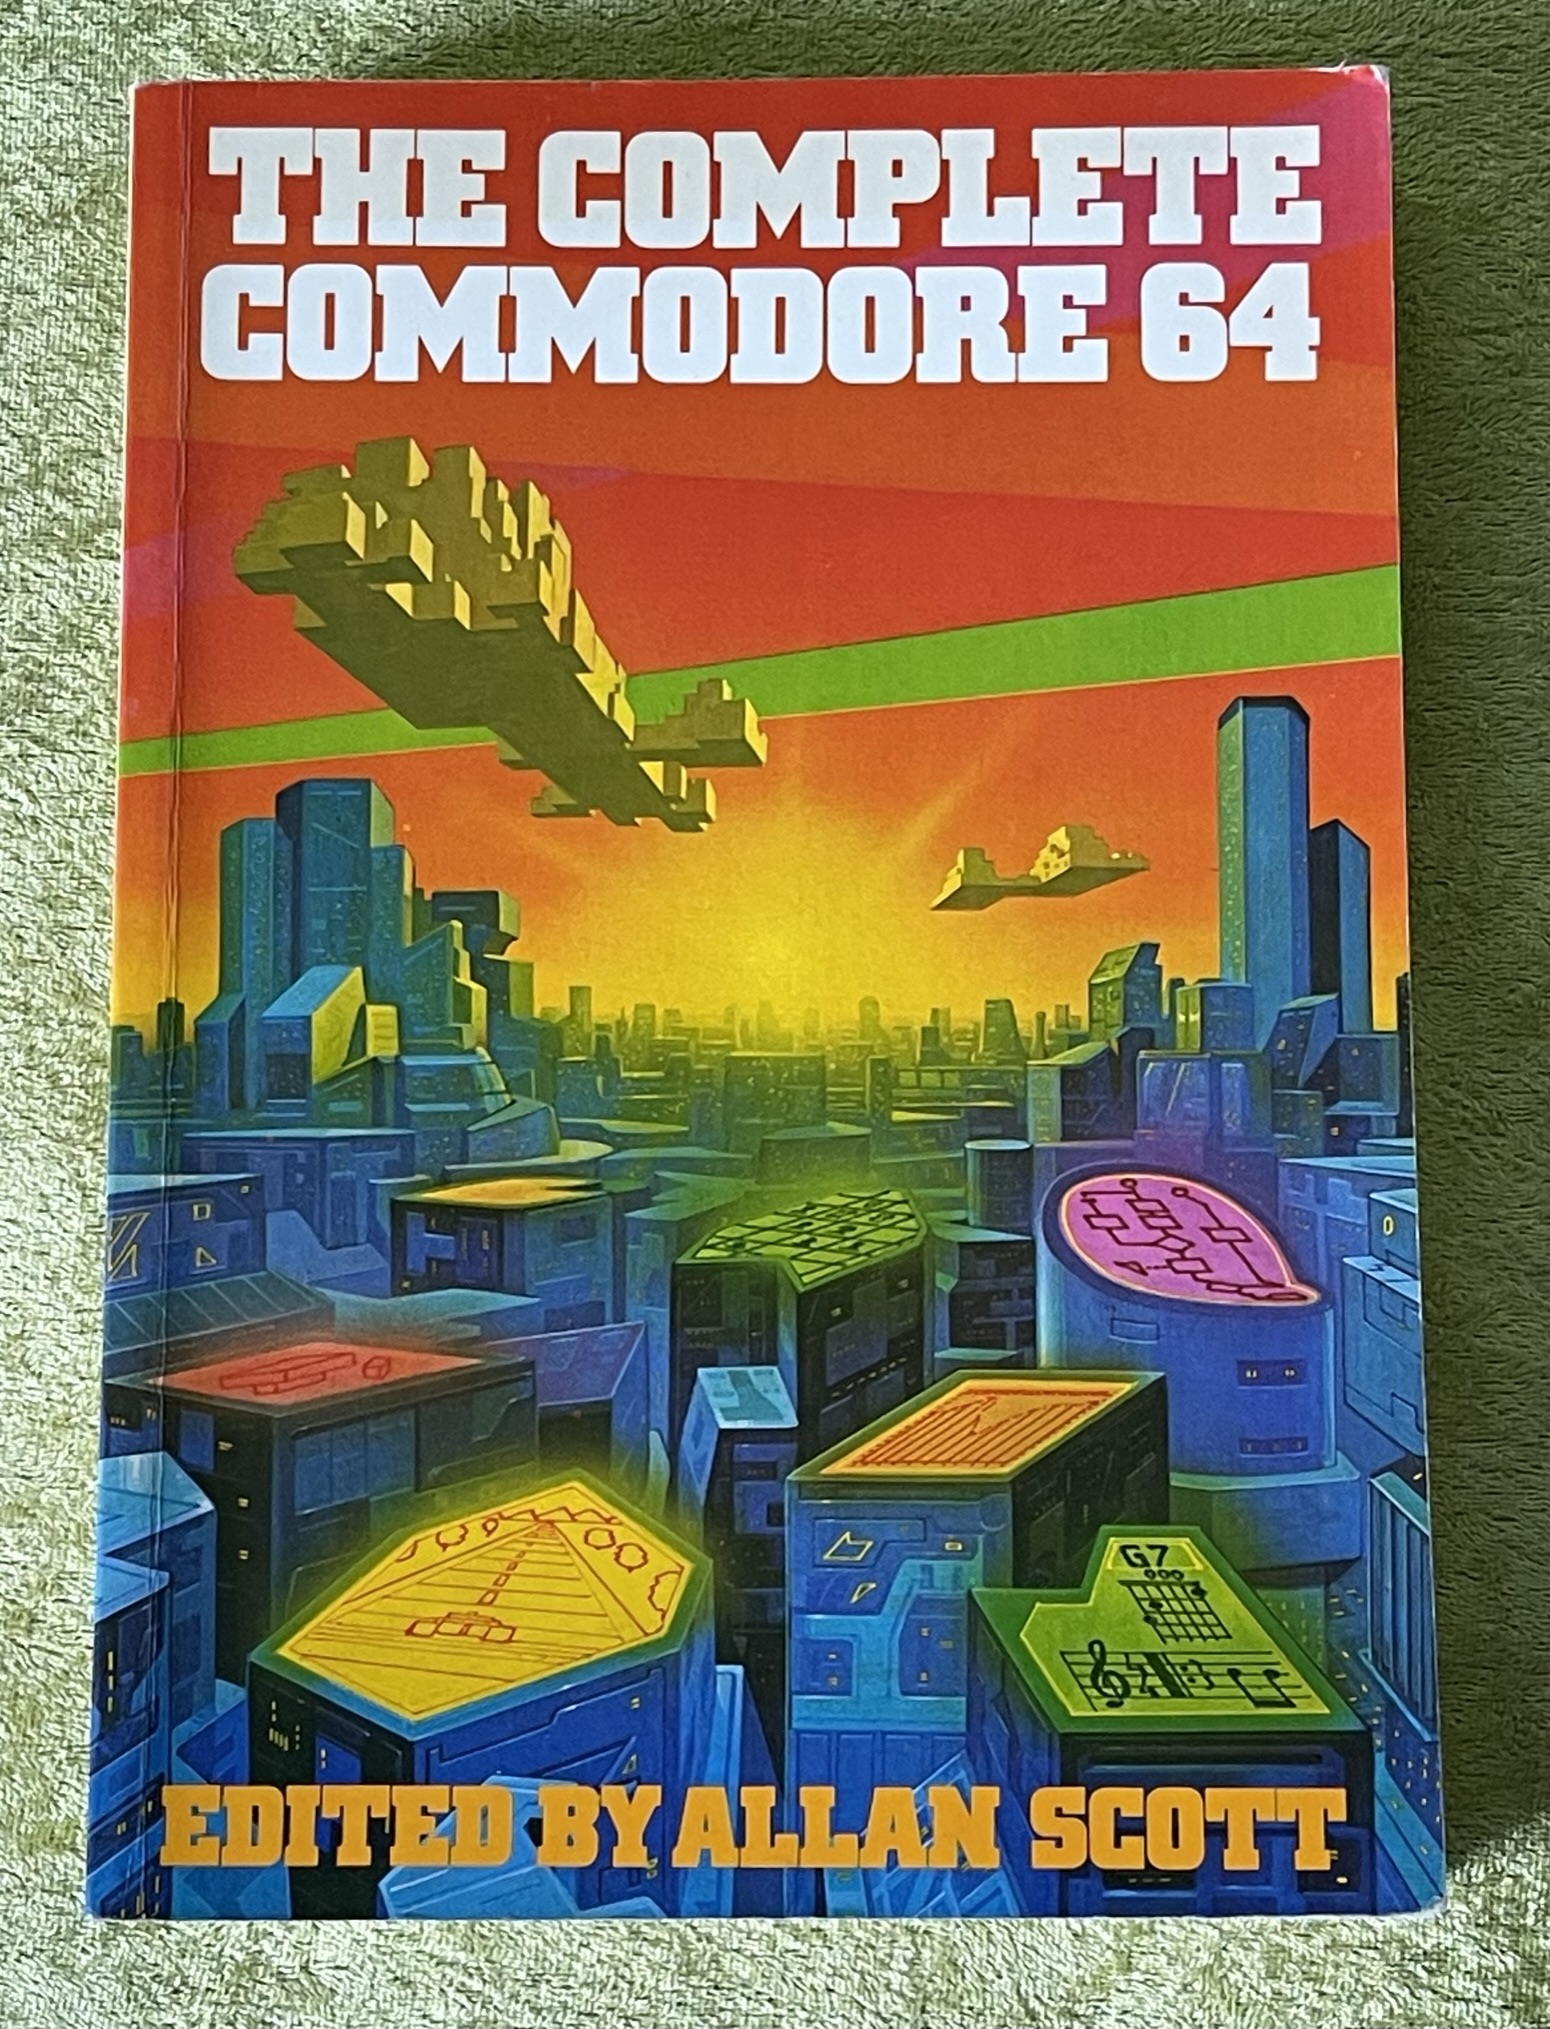 The Complete Commodore 64